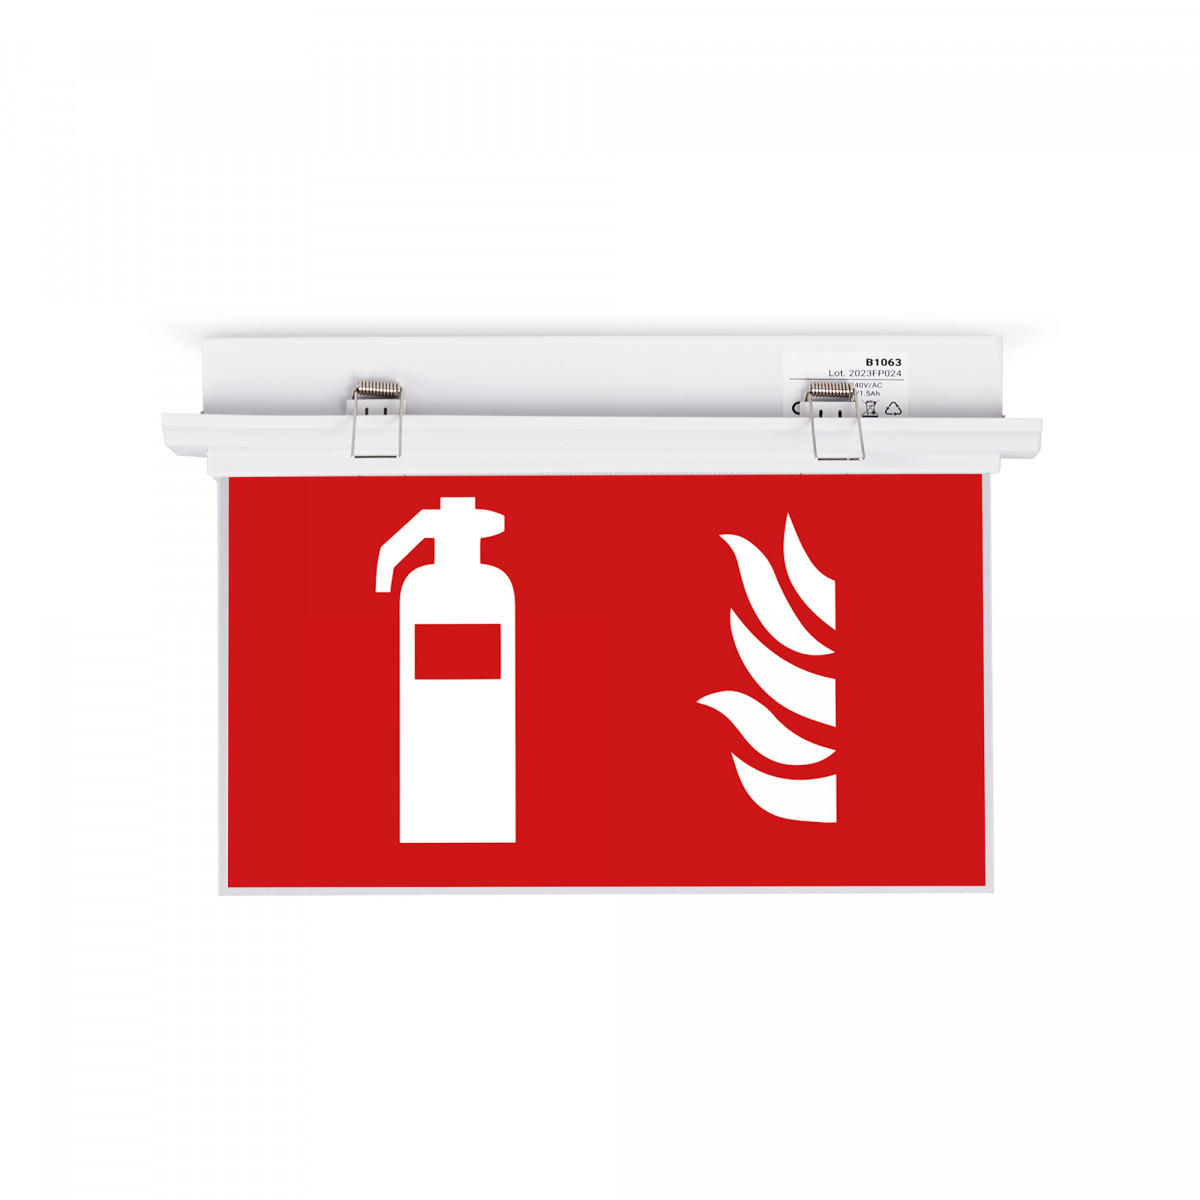 Dauerhafte Einbau-Notleuchte mit Feuerlöscher-Piktogramm - LED Sicherheitsbeleuchtung Feuer